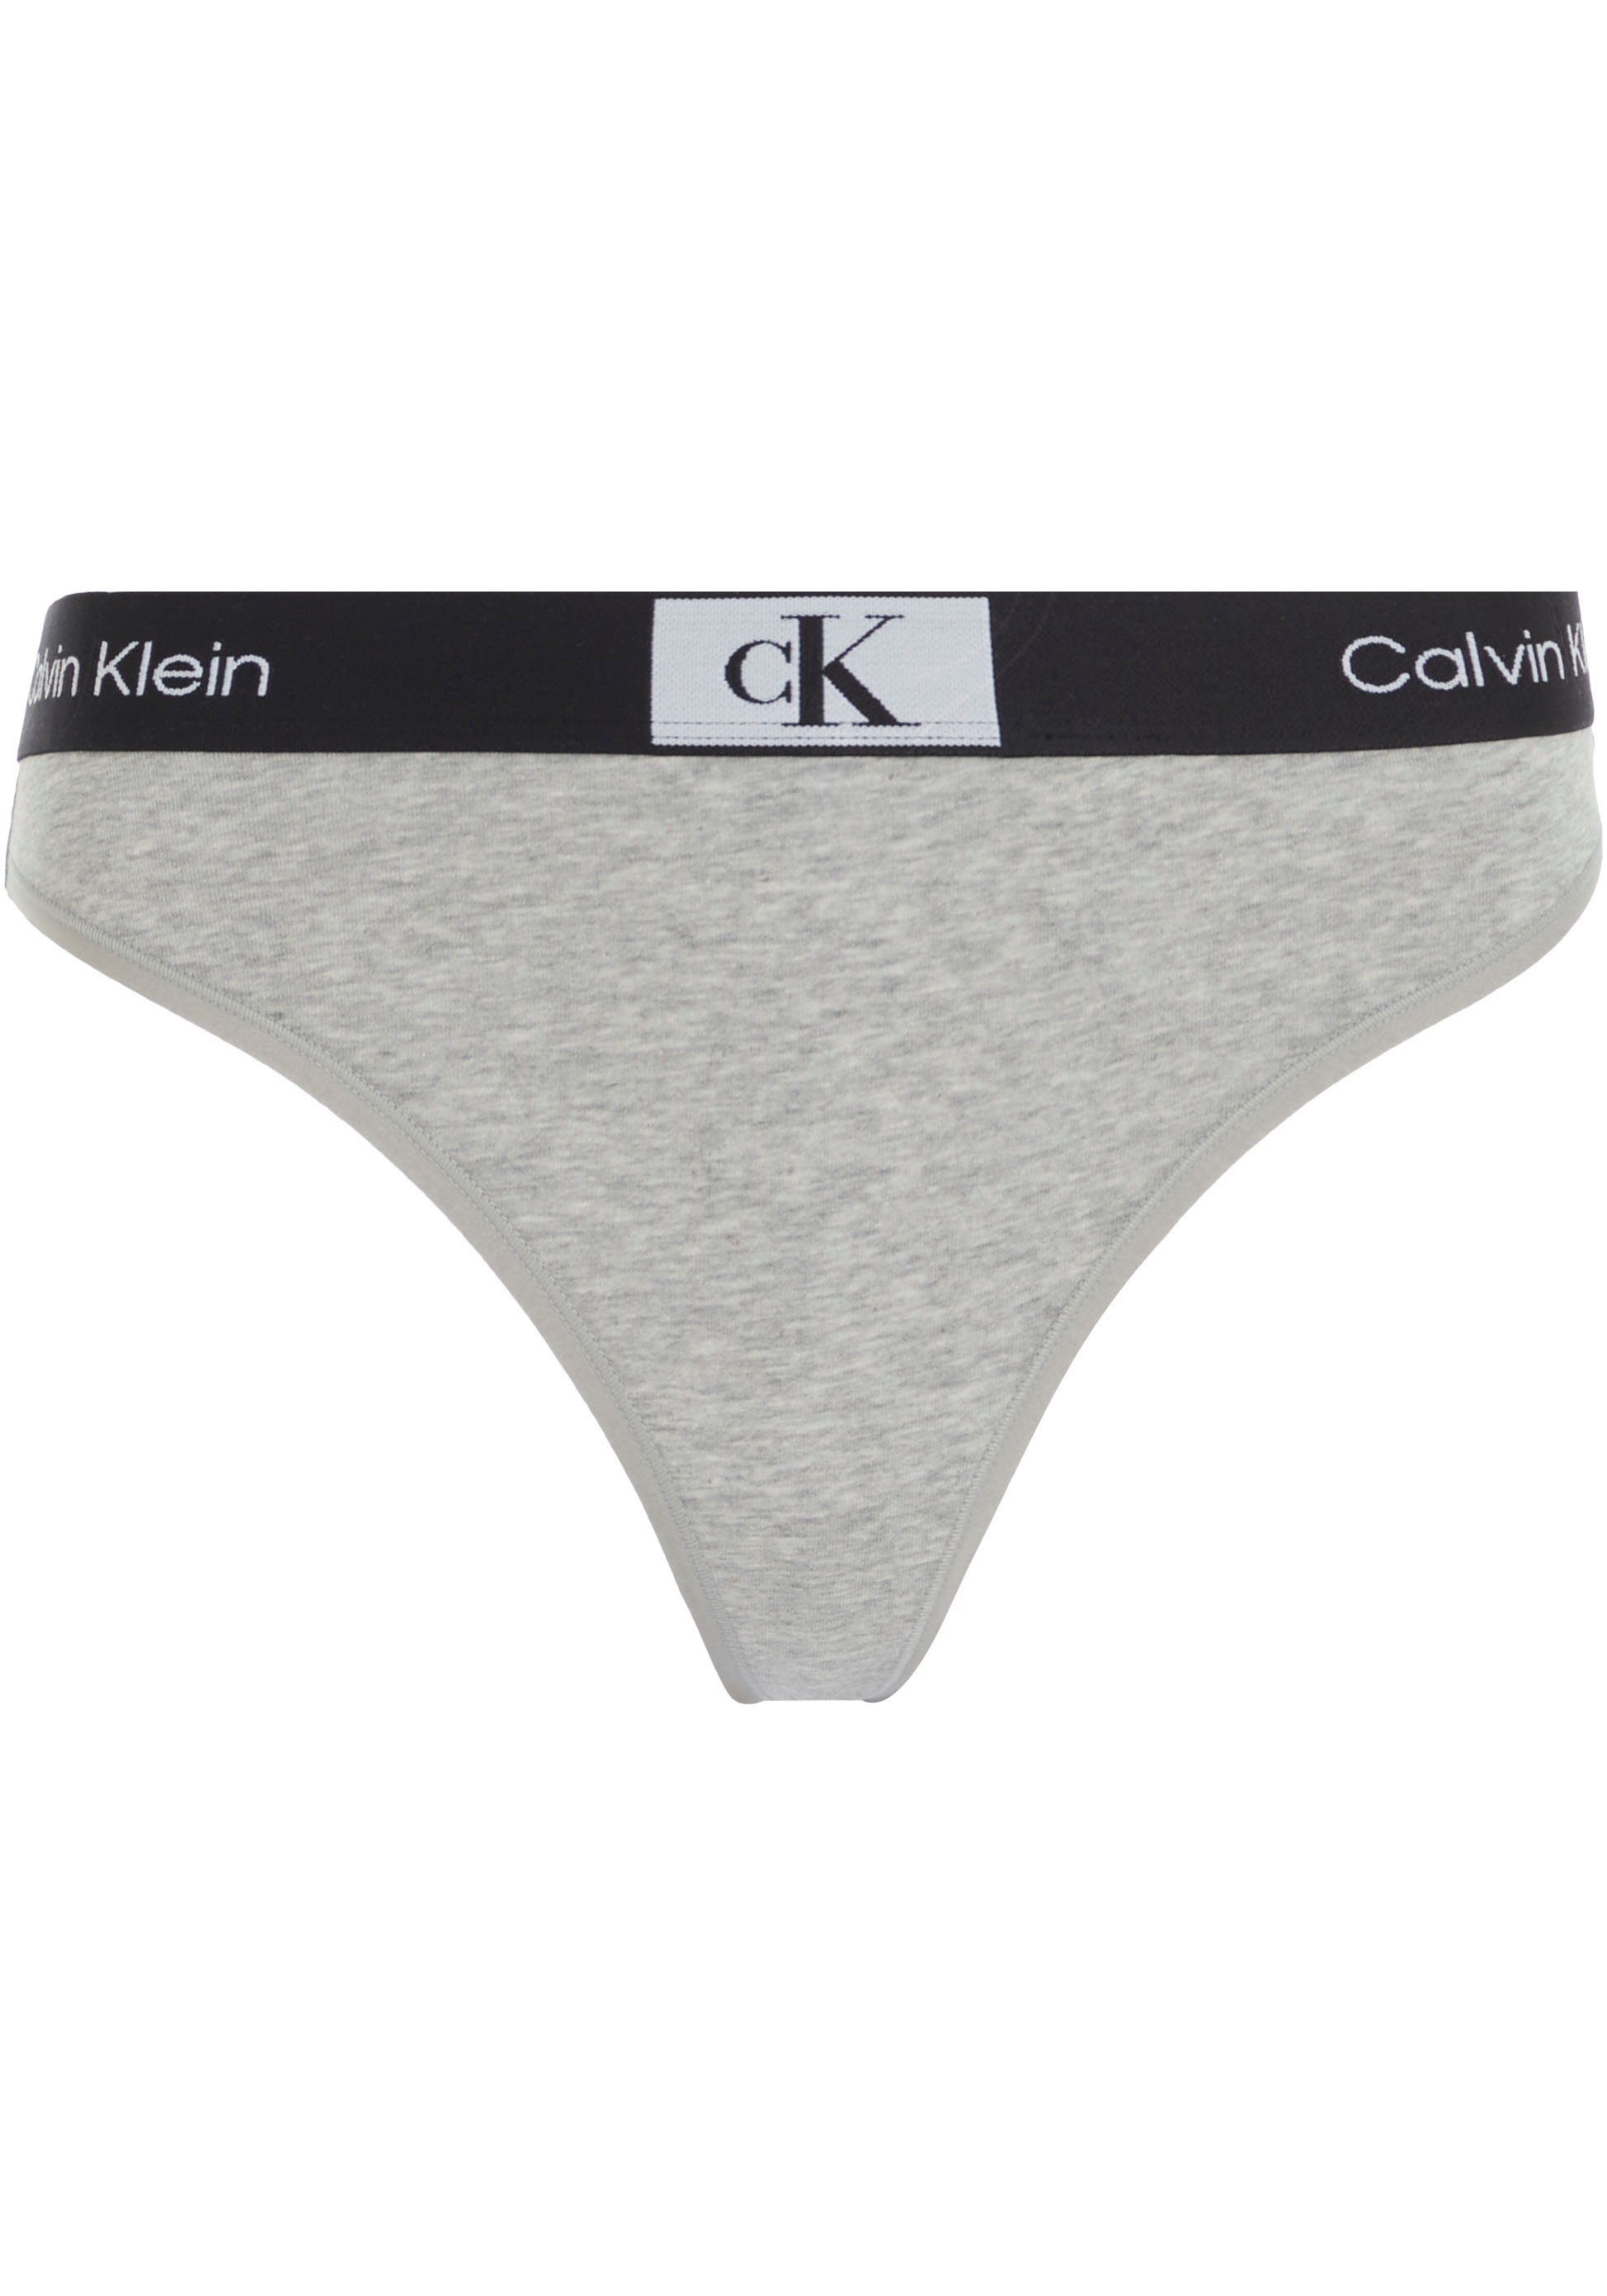 Alloverprint Klein THONG mit Underwear GREY-HEATHER T-String Calvin MODERN